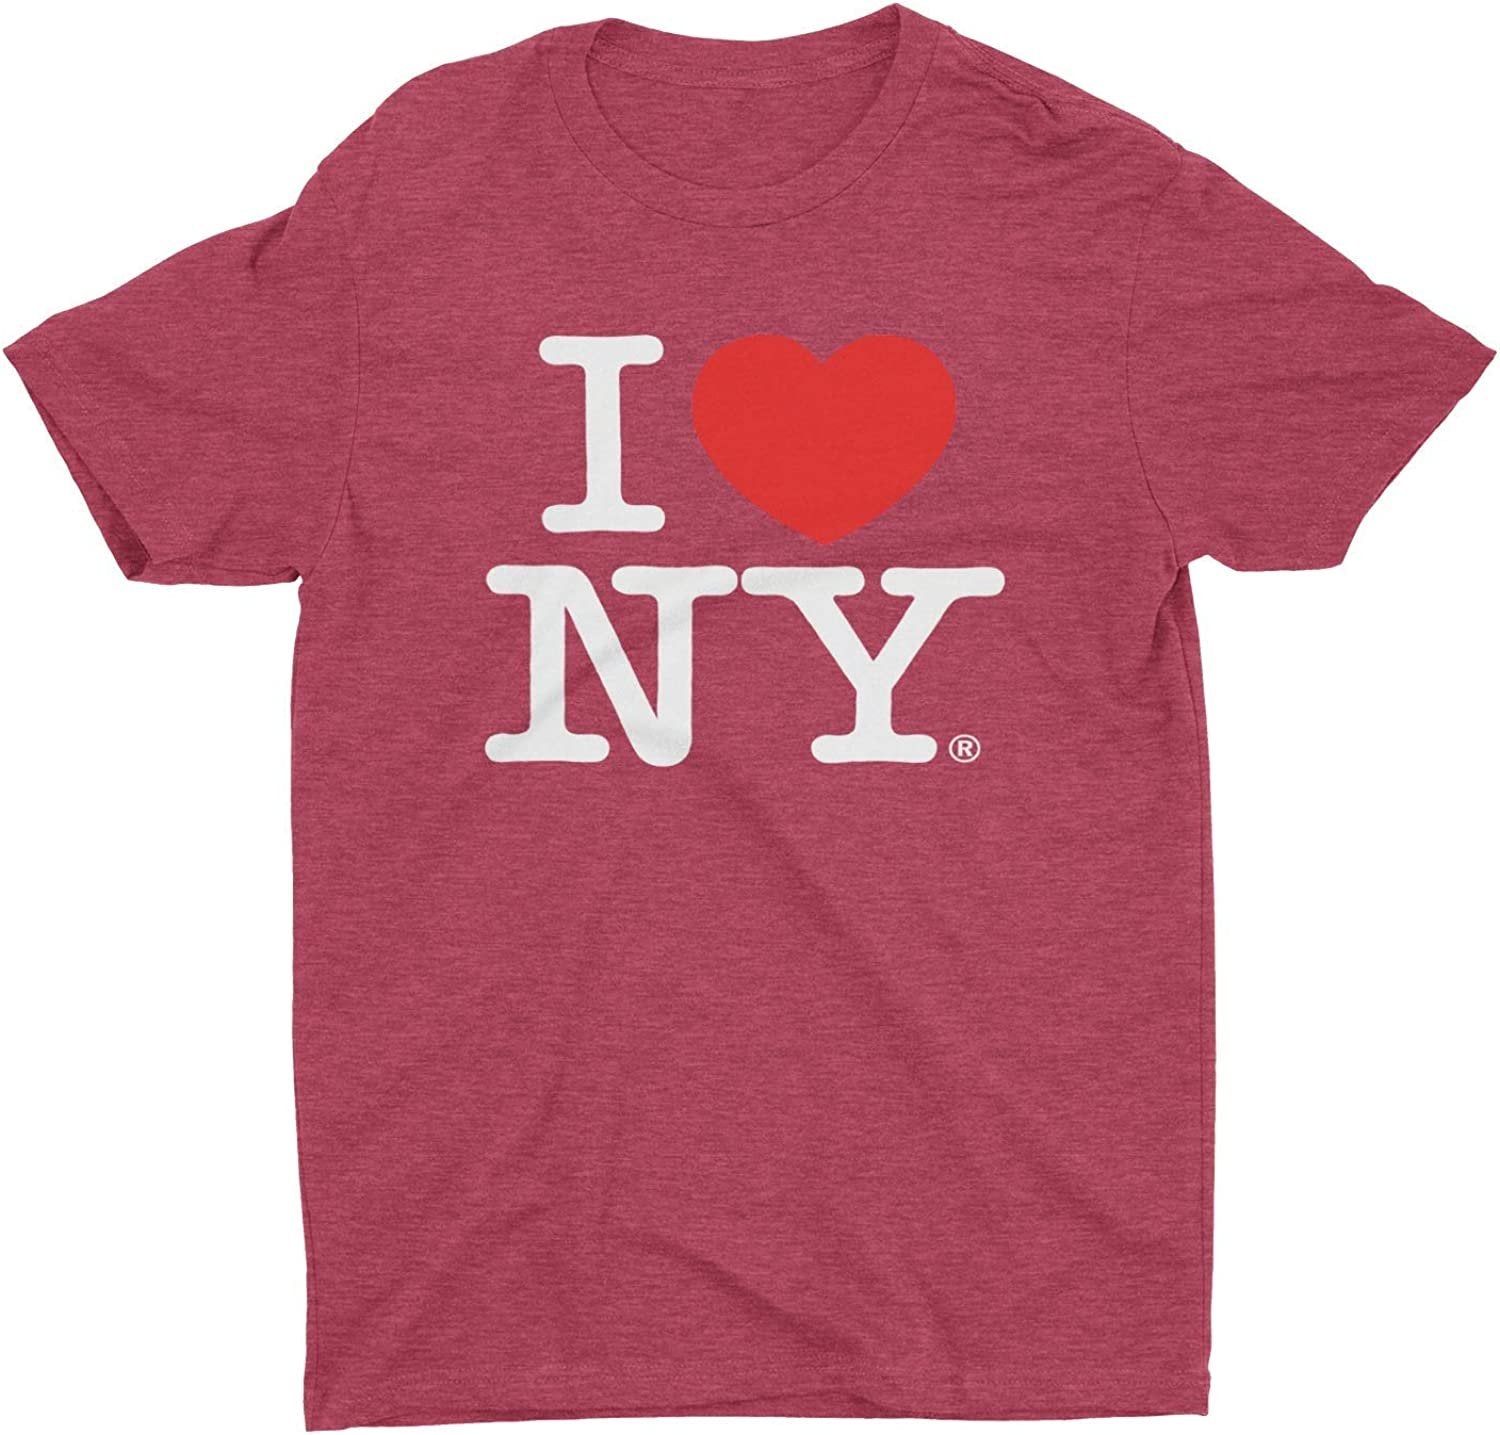 Ich liebe NY Retro Vintage T-Shirt Heather Burgund